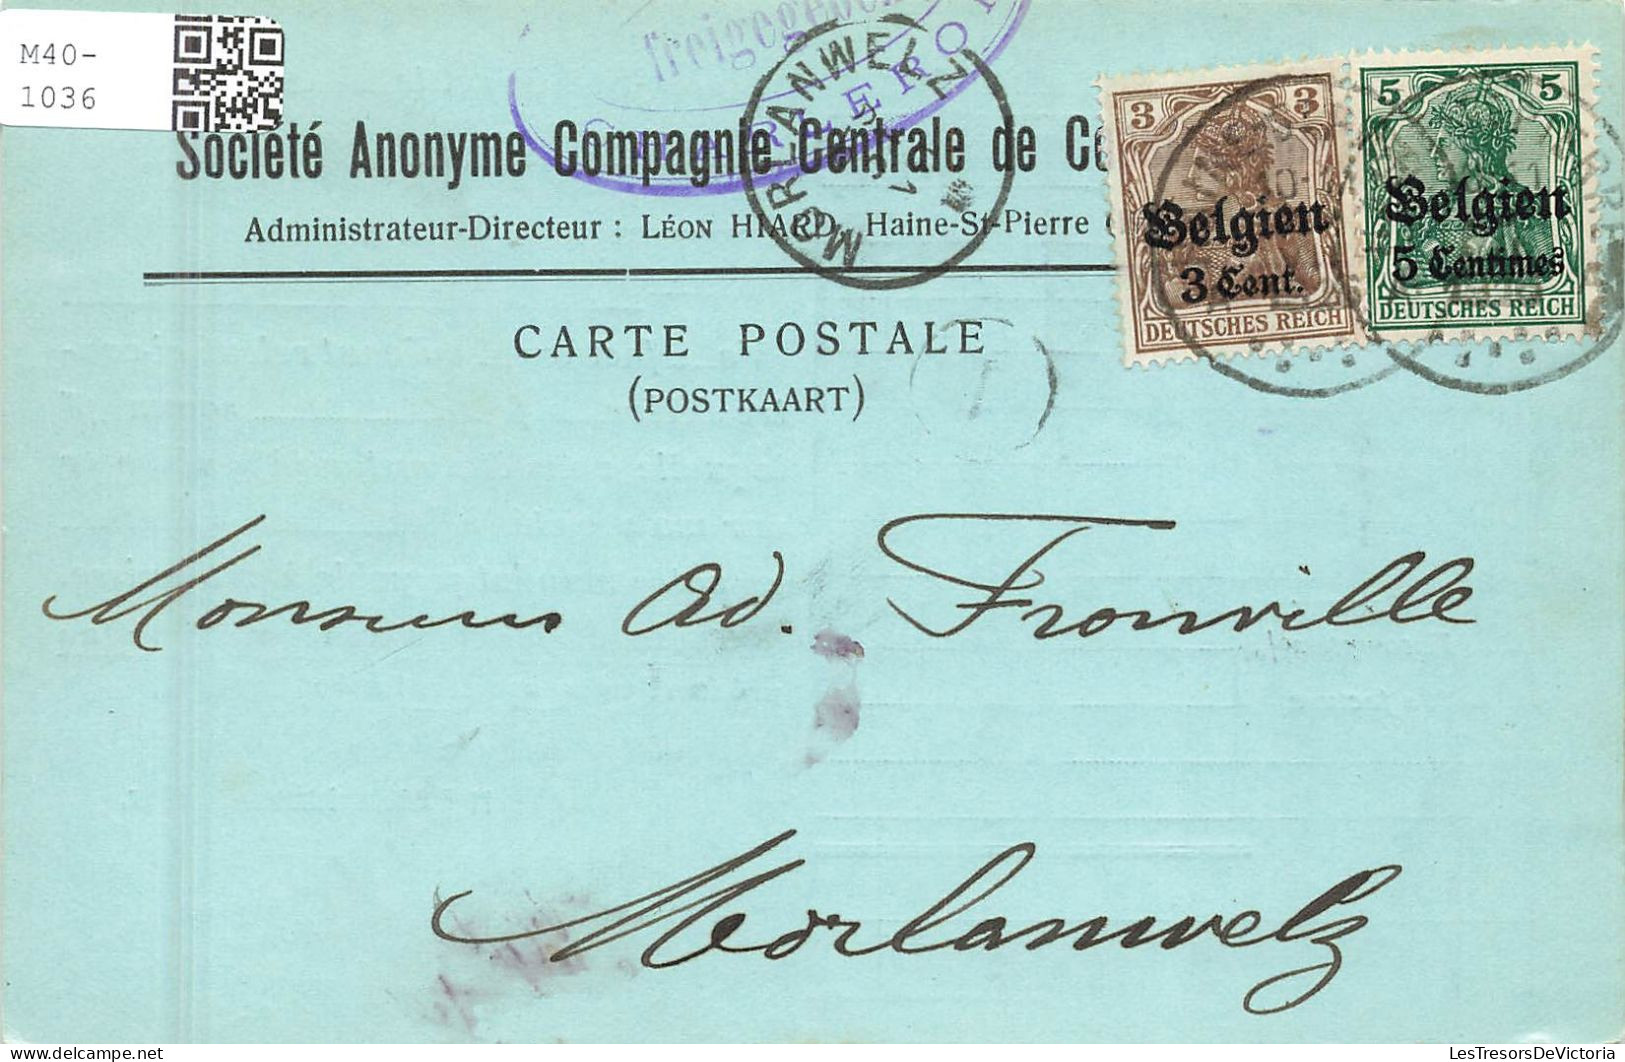 BELGIQUE - Société Anonyme Compagne Centrale De Co ? - Leon Hiard - Haine St Pierre - Carte Postale Ancienne - La Louvière